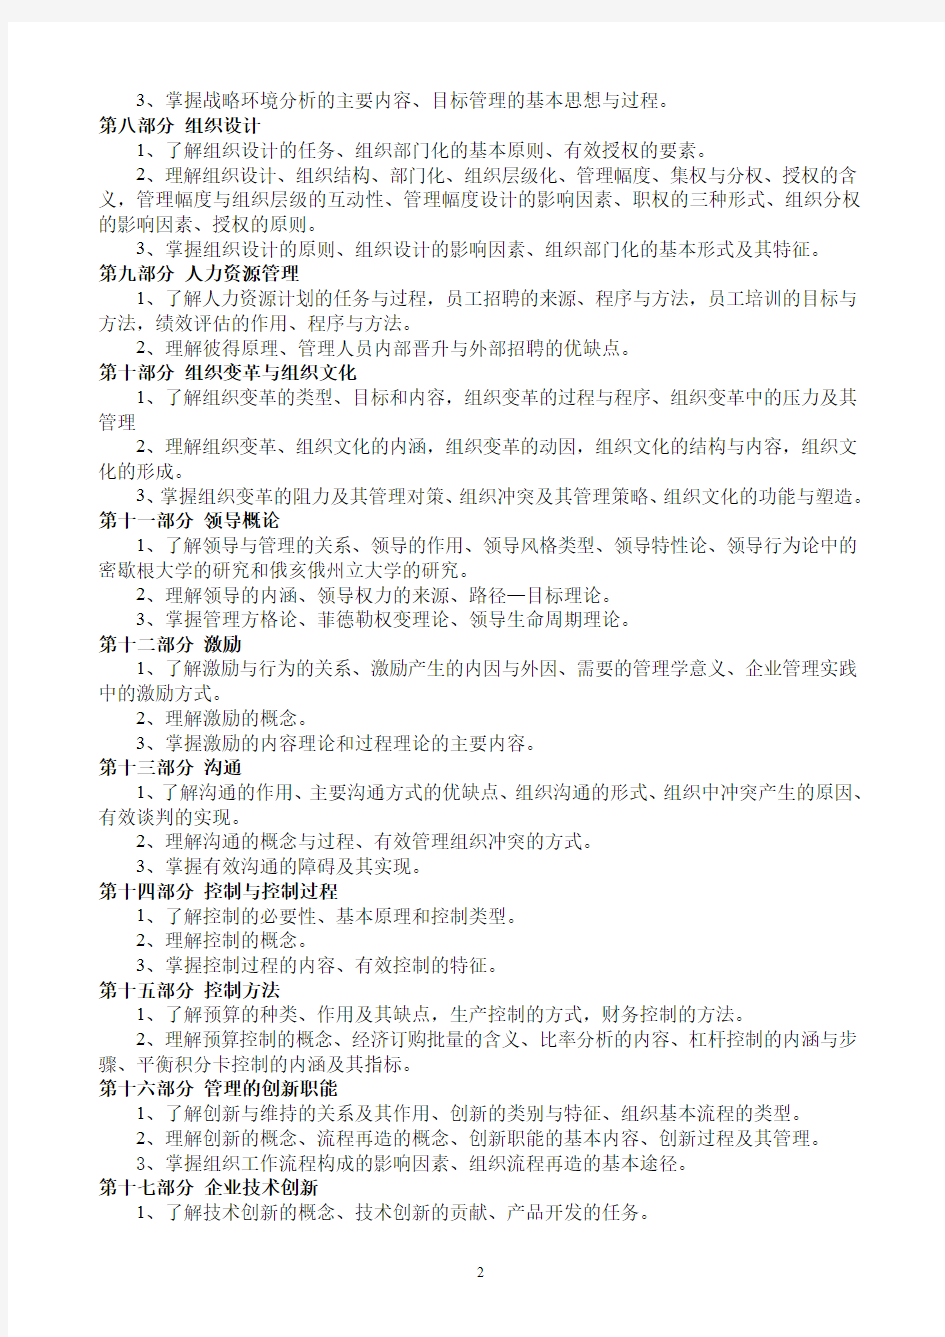 北京第二外国语学院2015年研究生入学考试初试业务课考试大纲--管理学